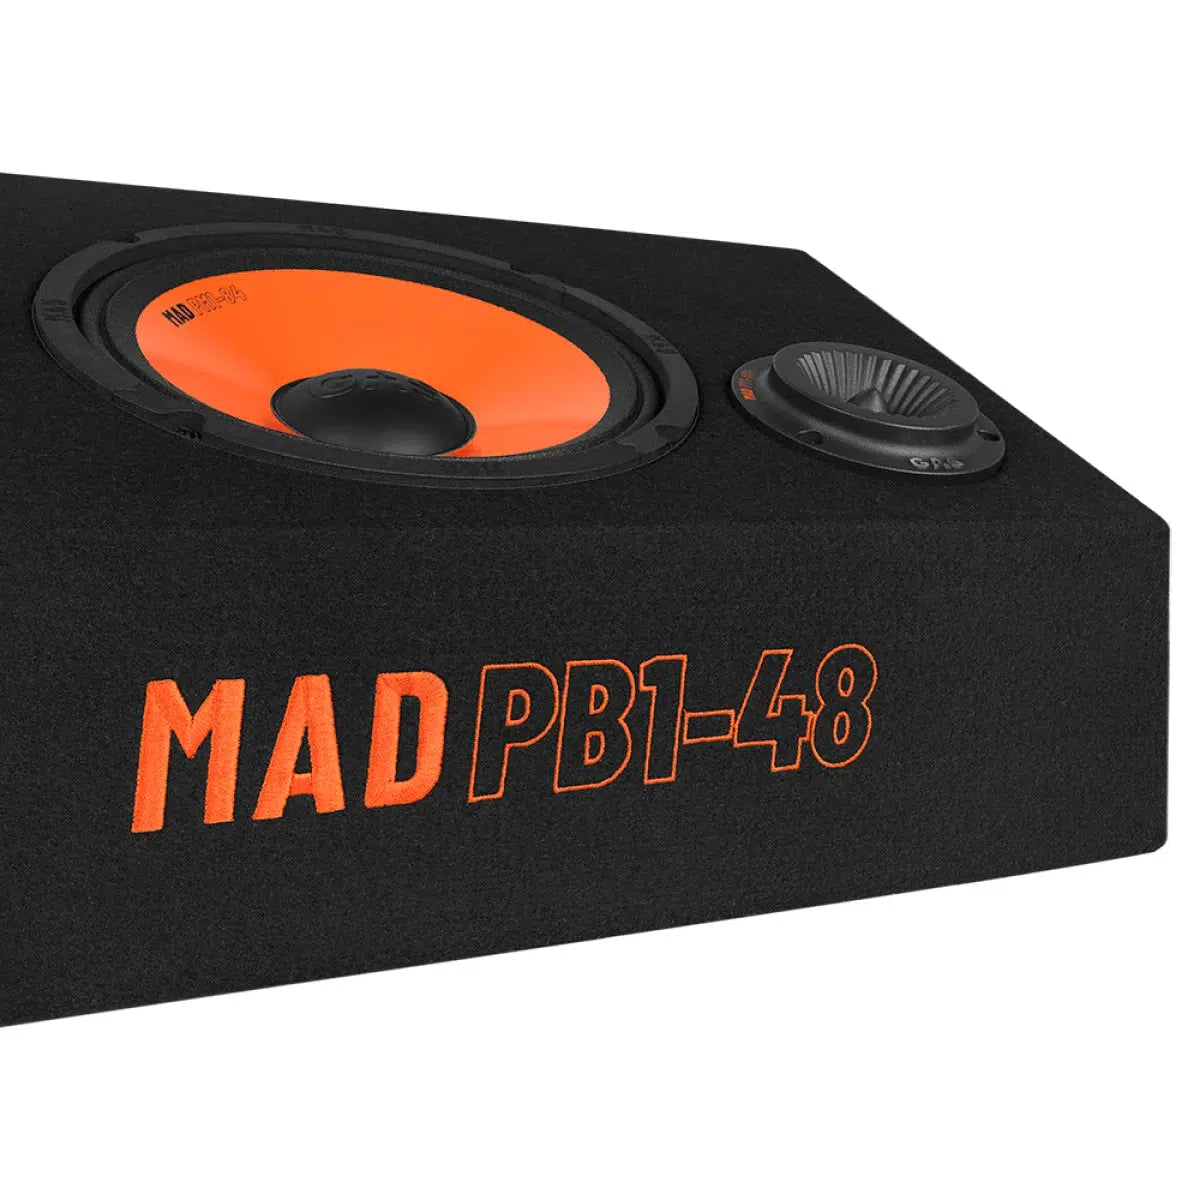 GAS-Mad PB1 48-8" (8cm) cabinet loudspeaker-Masori.de